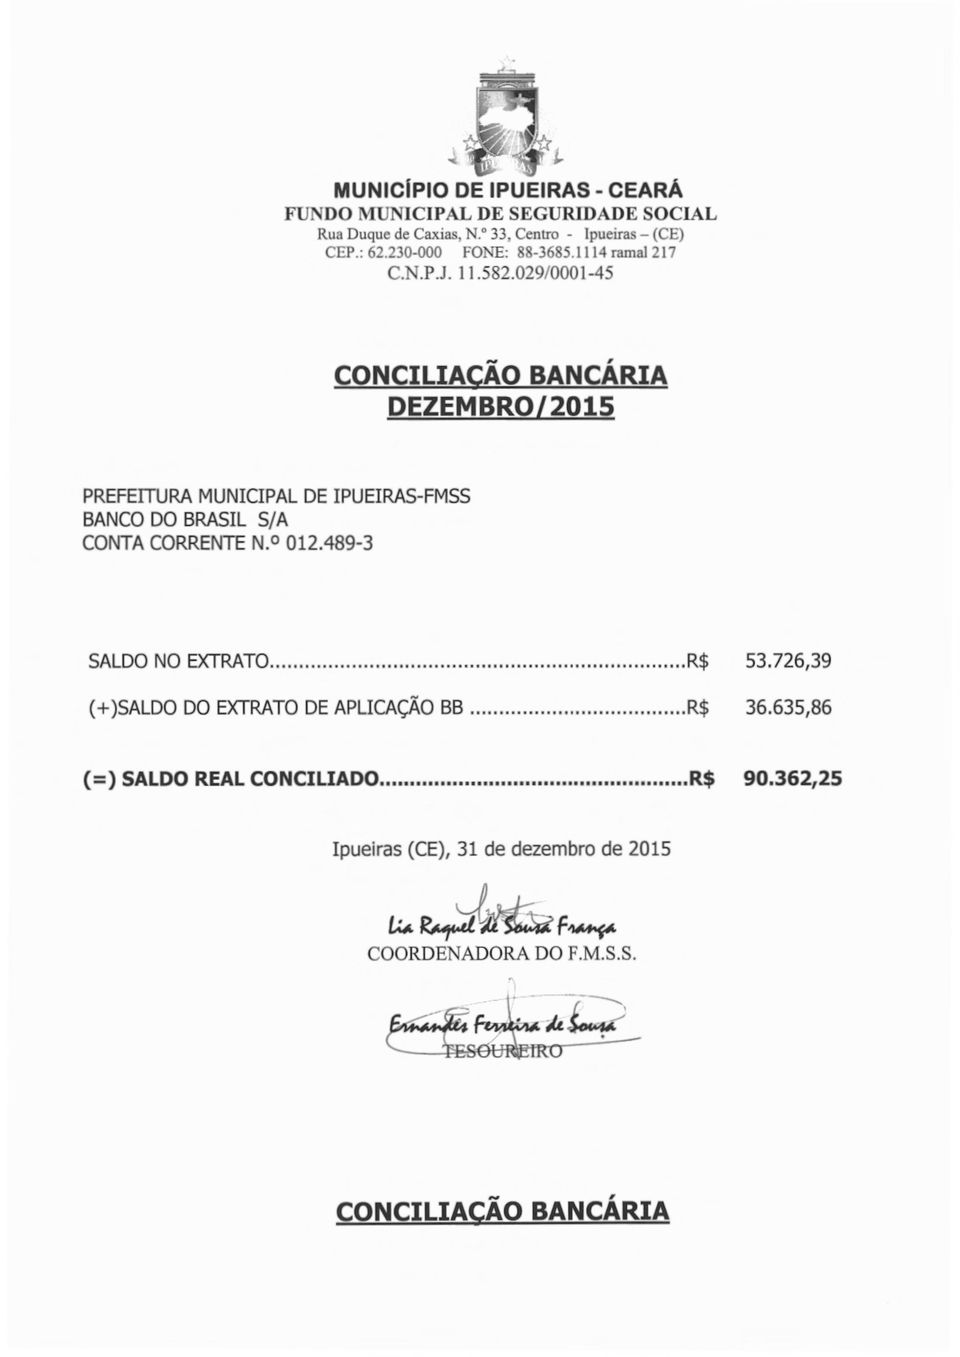 029/0001-45 CONCILIAÇÃO BANCÁRIA DEZEMBRO/2015 PREFEITURA MUNICIPAL DE IPUEIRAS-FMSS BANCO DO BRASIL 5/A CONTA CORRENTE N. 012.